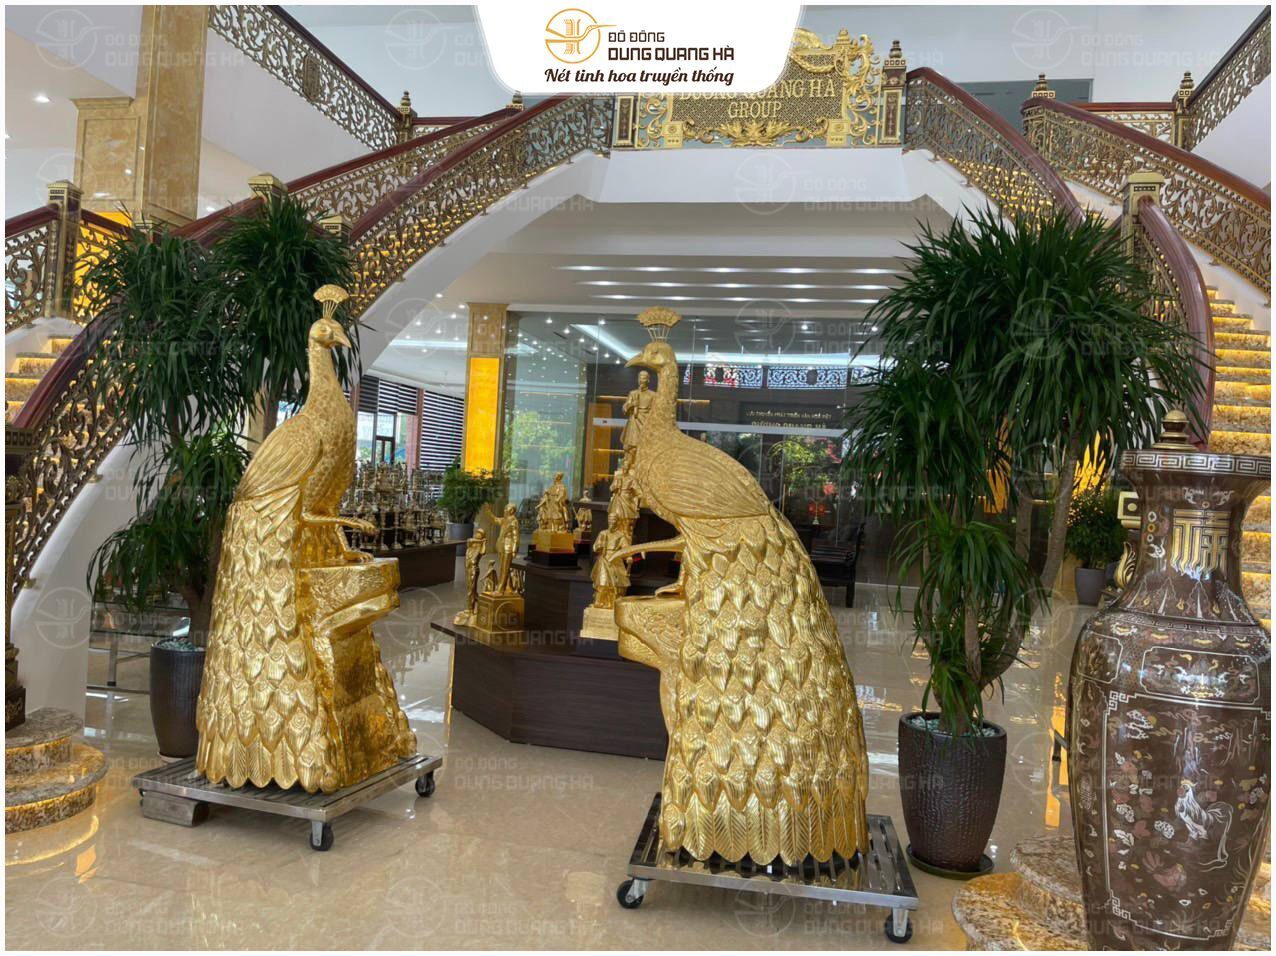 Giao đôi công bằng đồng vàng cao 2m05 cho khách tại Hà Nội